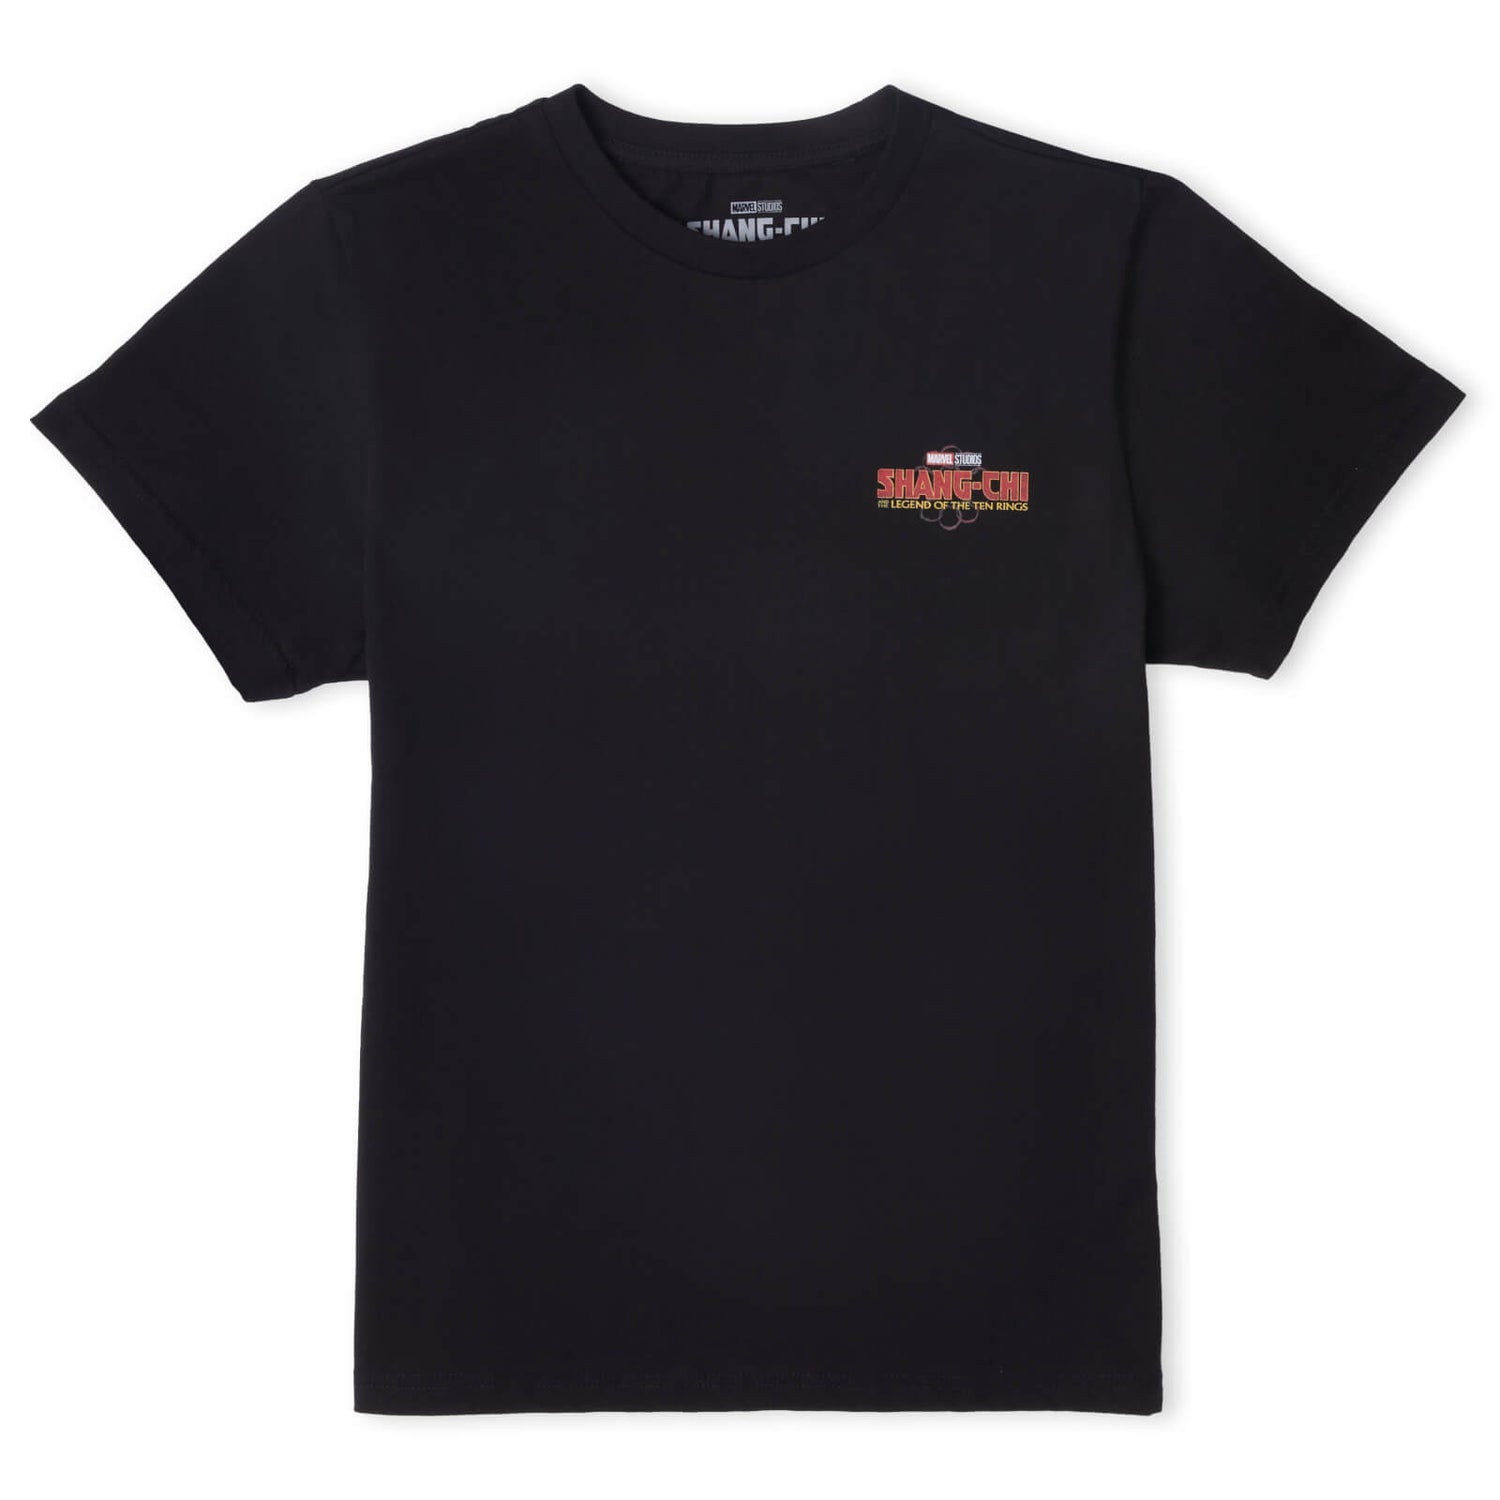 Shang-Chi Women's T-Shirt - Black